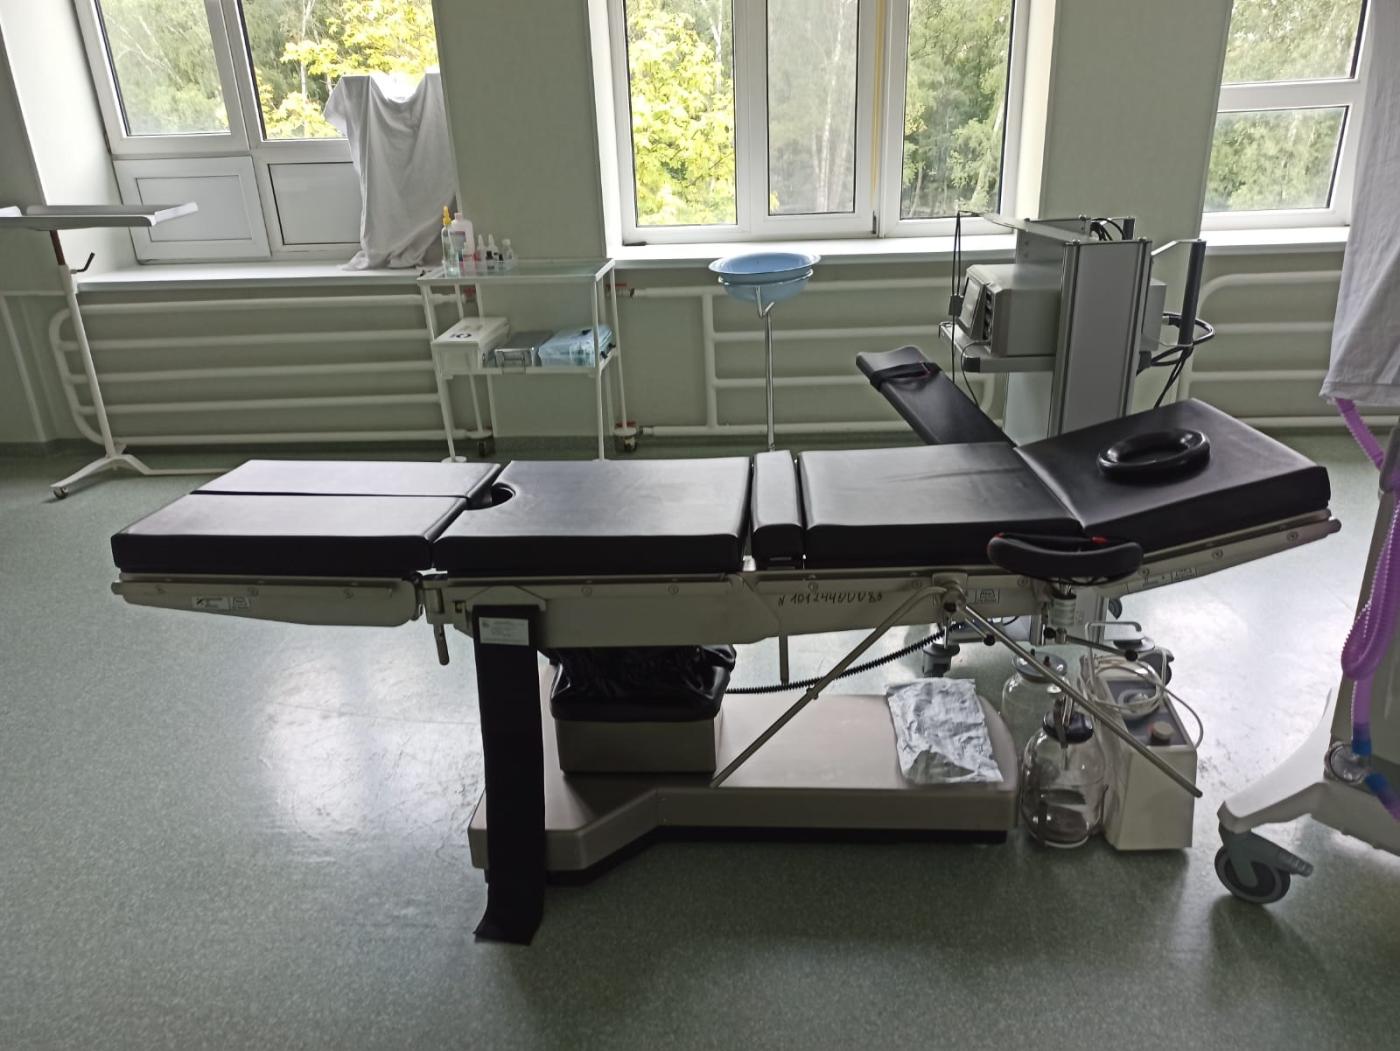 Порядка ста двадцати хирургических вмешательств выполнено на новых операционных столах в Пионерском